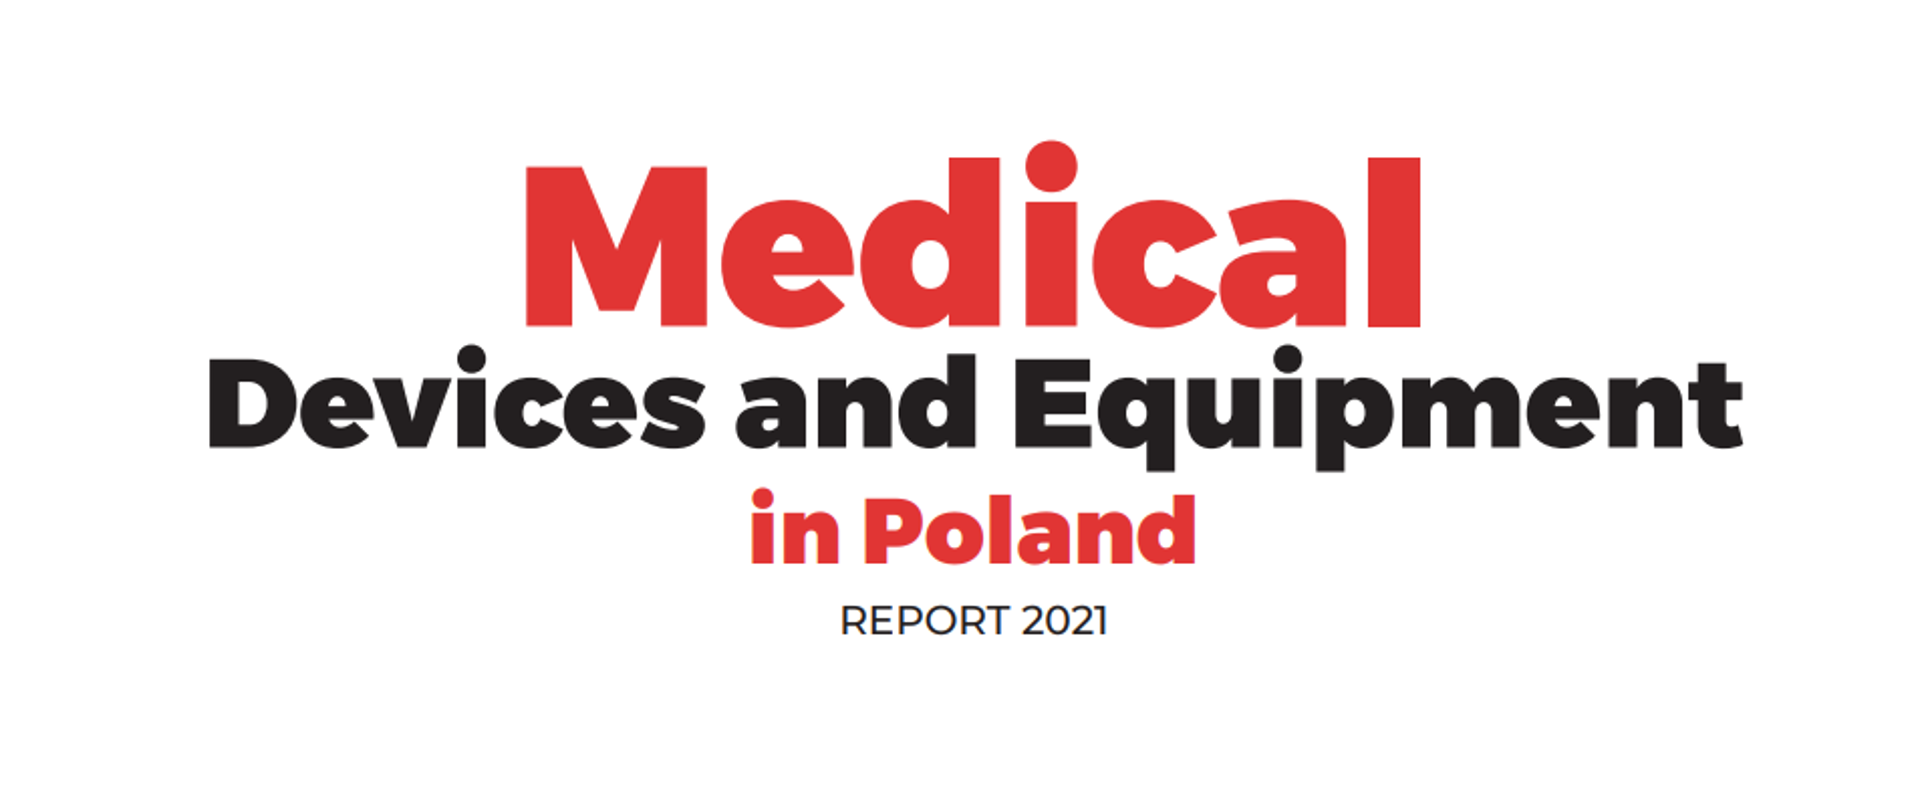 Raport Medical Devices and Equipment in Poland - raport 2021 Polskiej Agencji Rozwoju Przedsiębiorczości